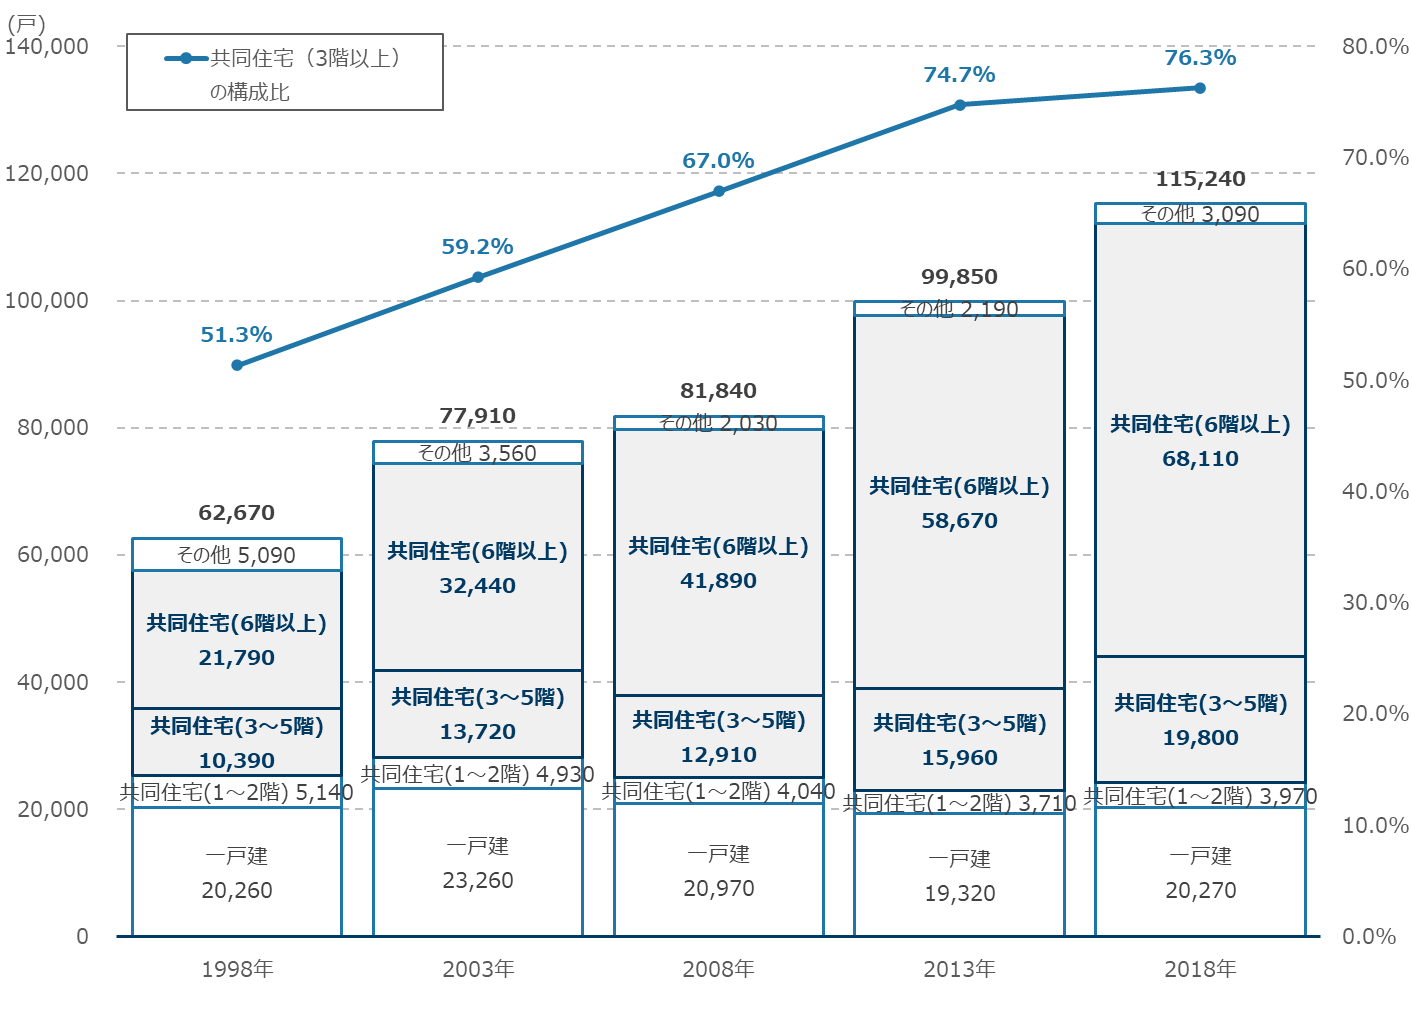 世田谷区における建て方別住宅戸数の推移